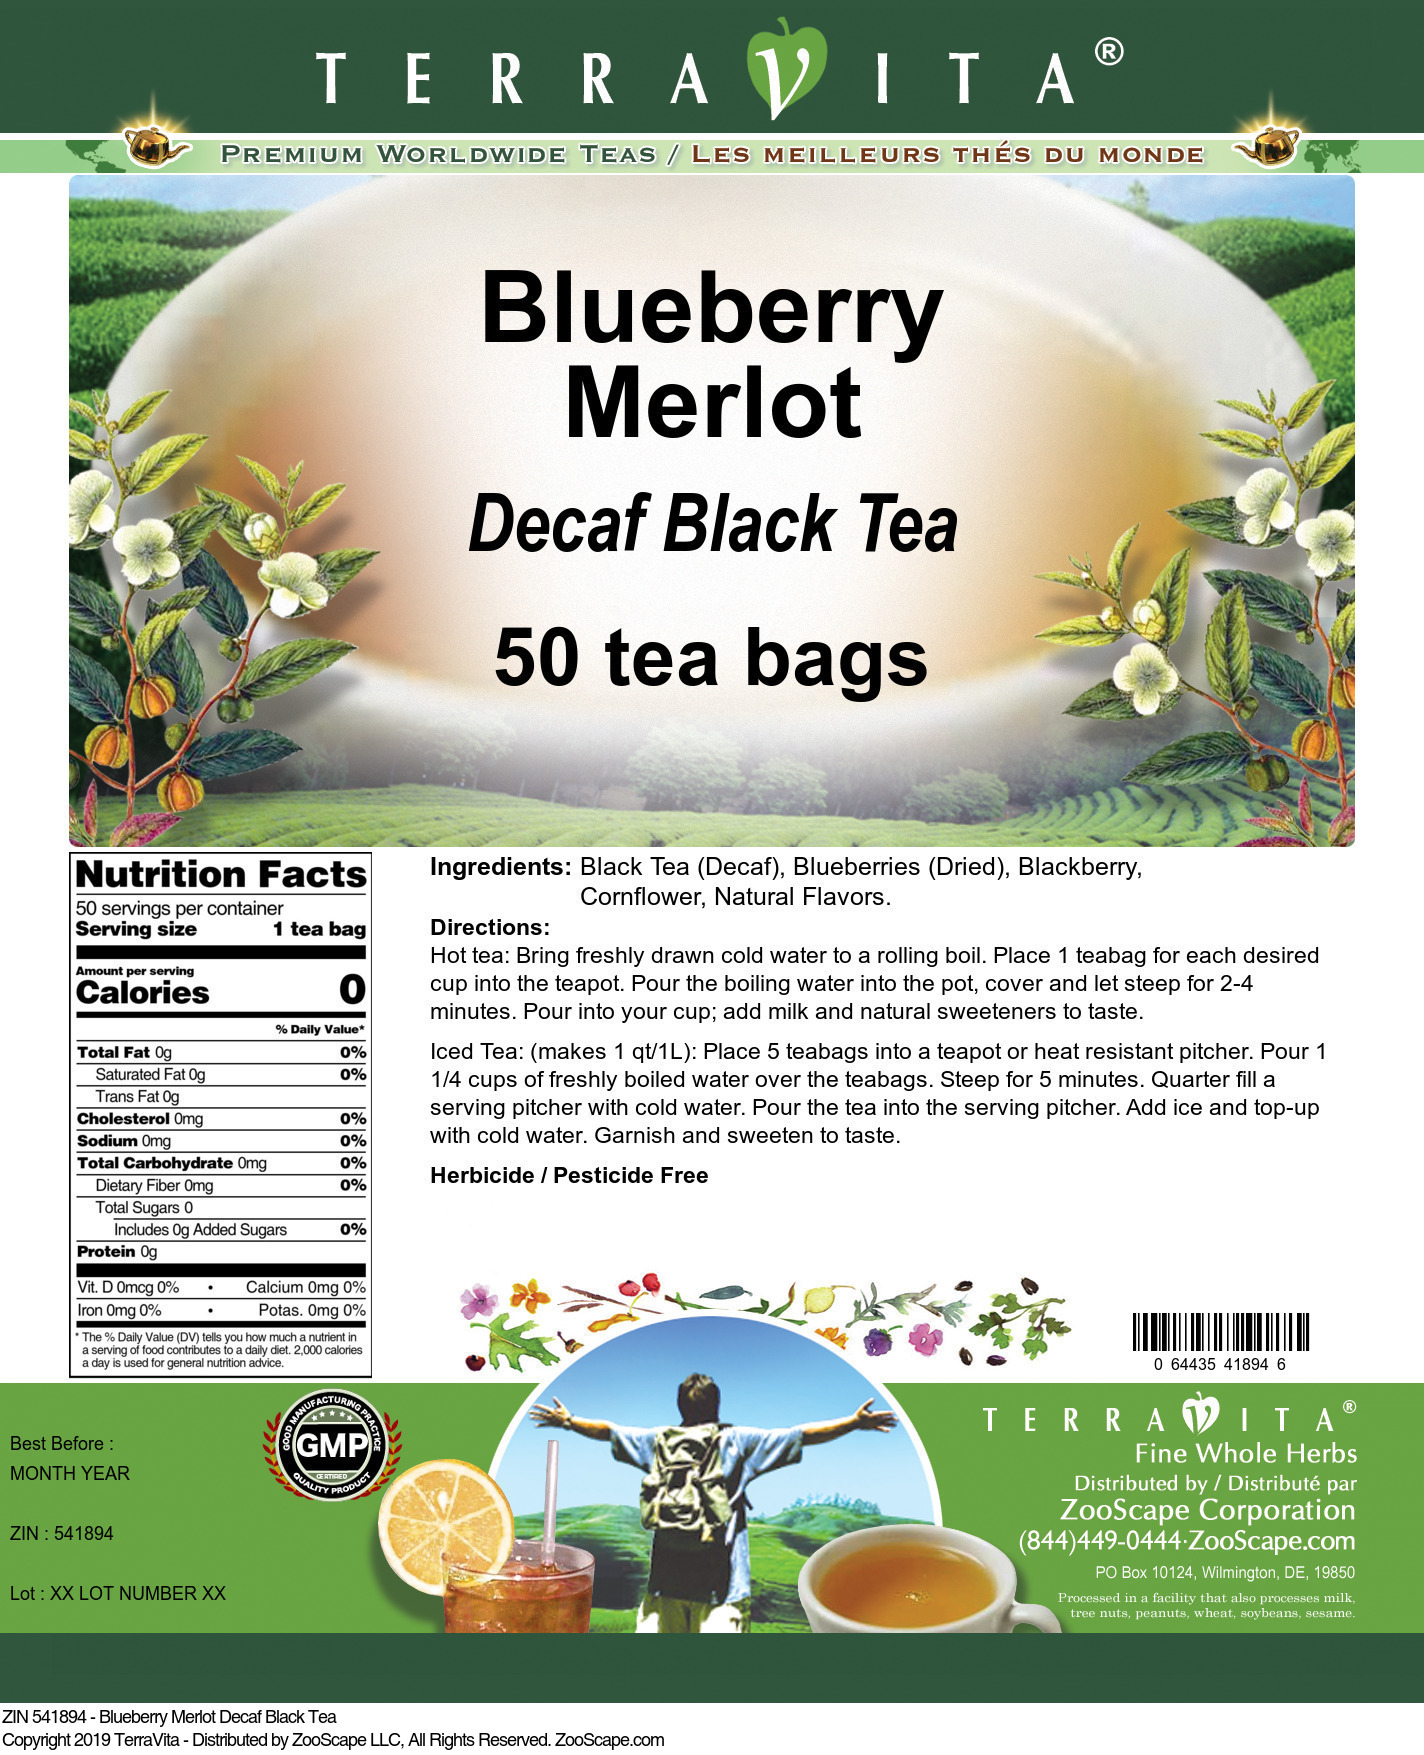 Blueberry Merlot Decaf Black Tea - Label